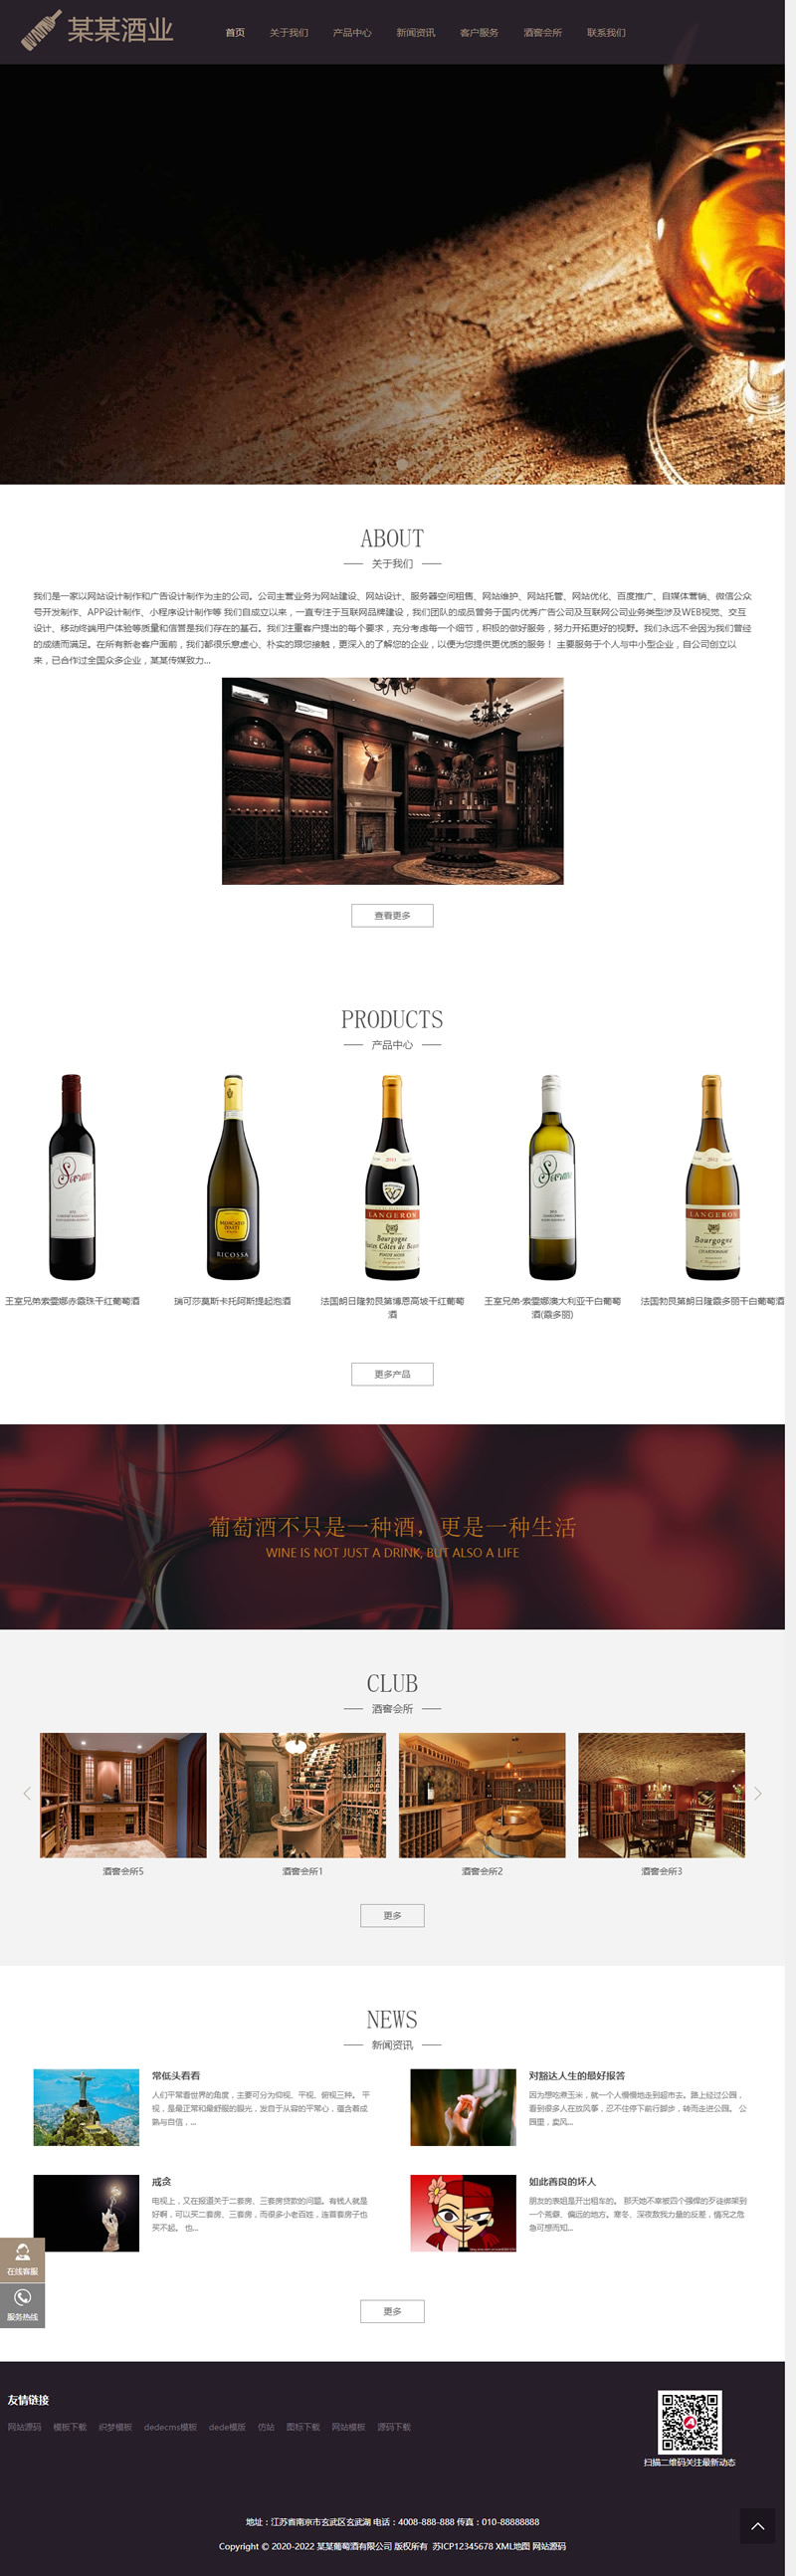 图片[1]-(自顺应手机版)相应式高端藏酒酒业酒窖网站源码 HTML5葡萄酒酒业网站织梦模板-零度空间